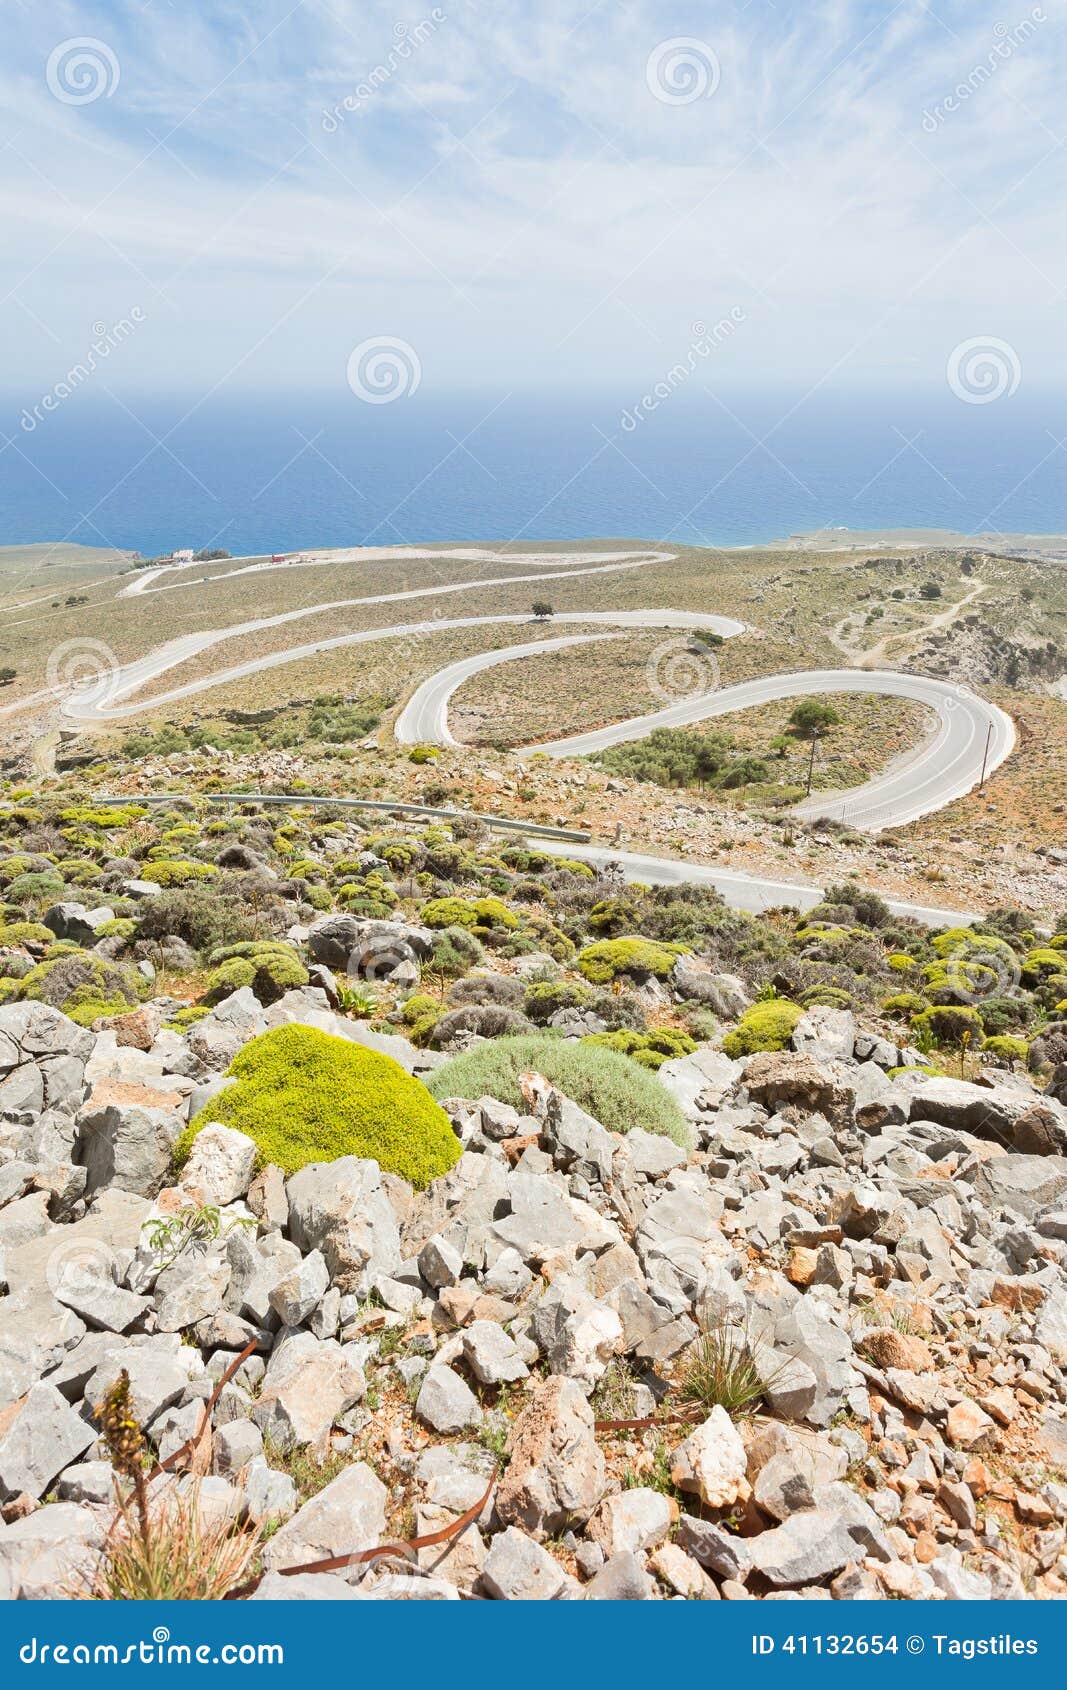 mountain road of imbros